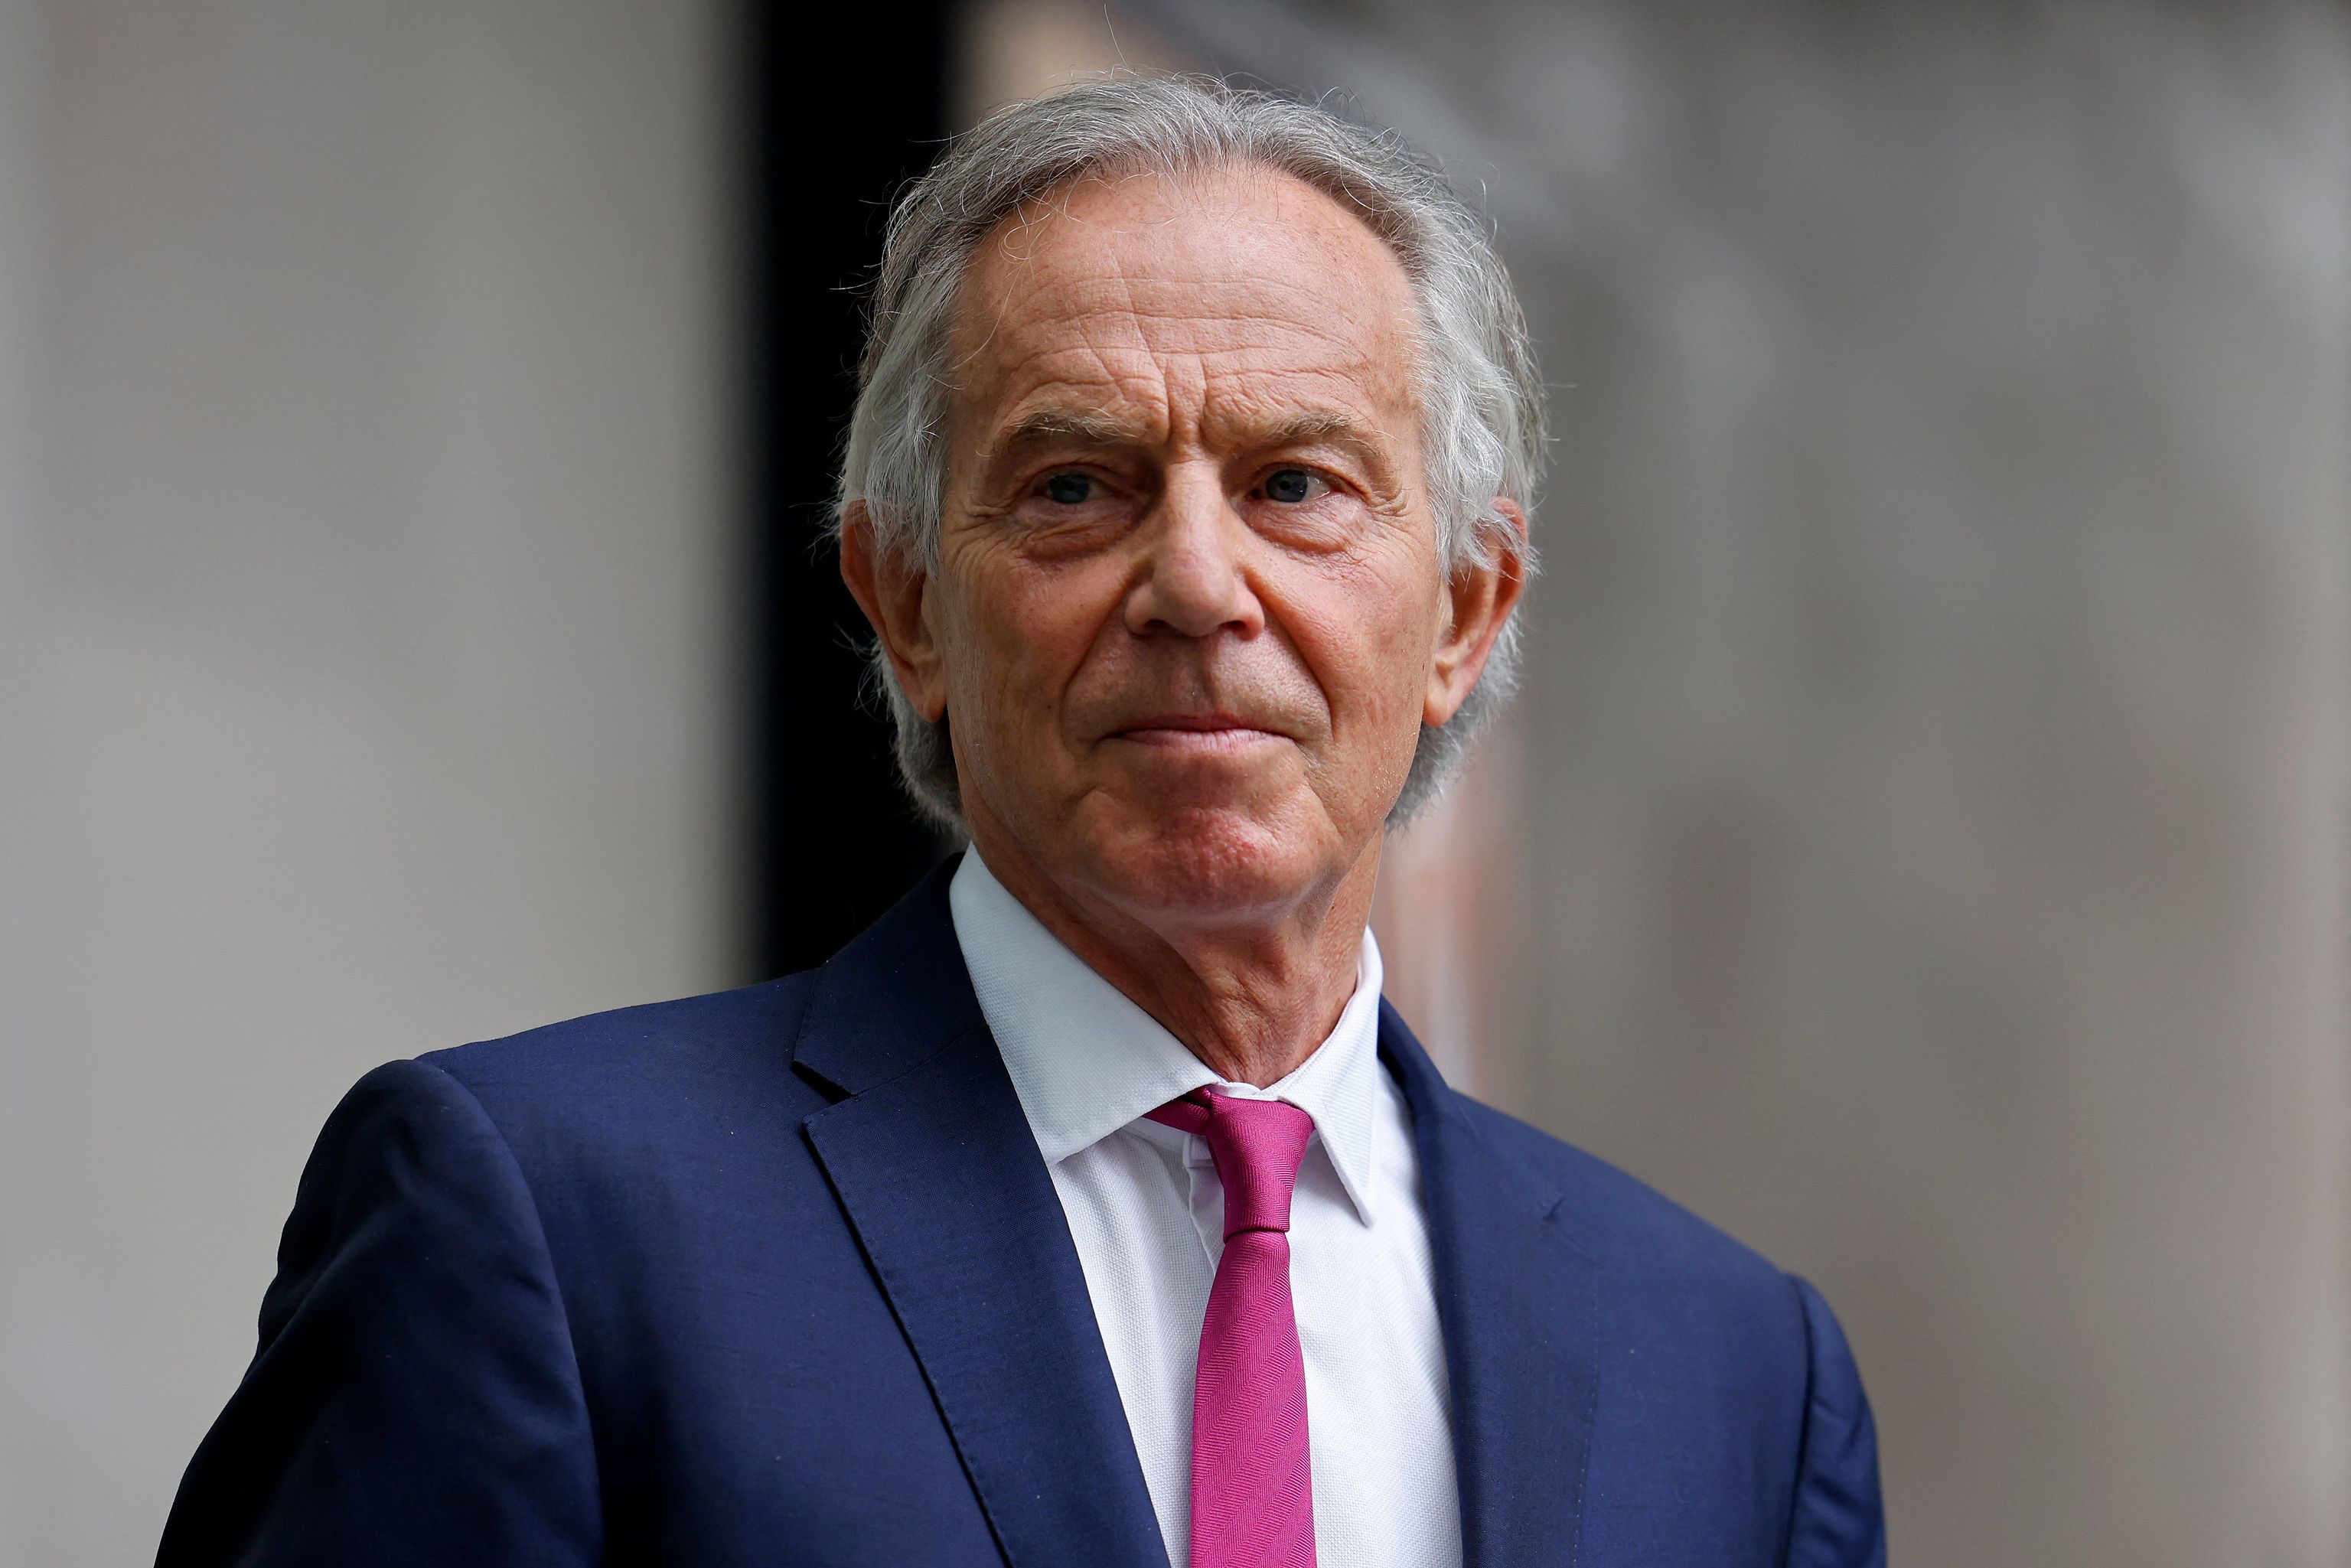 El ex premier laborista, Tony Blair, en una foto de 2021. rded for outstanding public service and achievement. (Photo by Tolga Akmen / AFP)